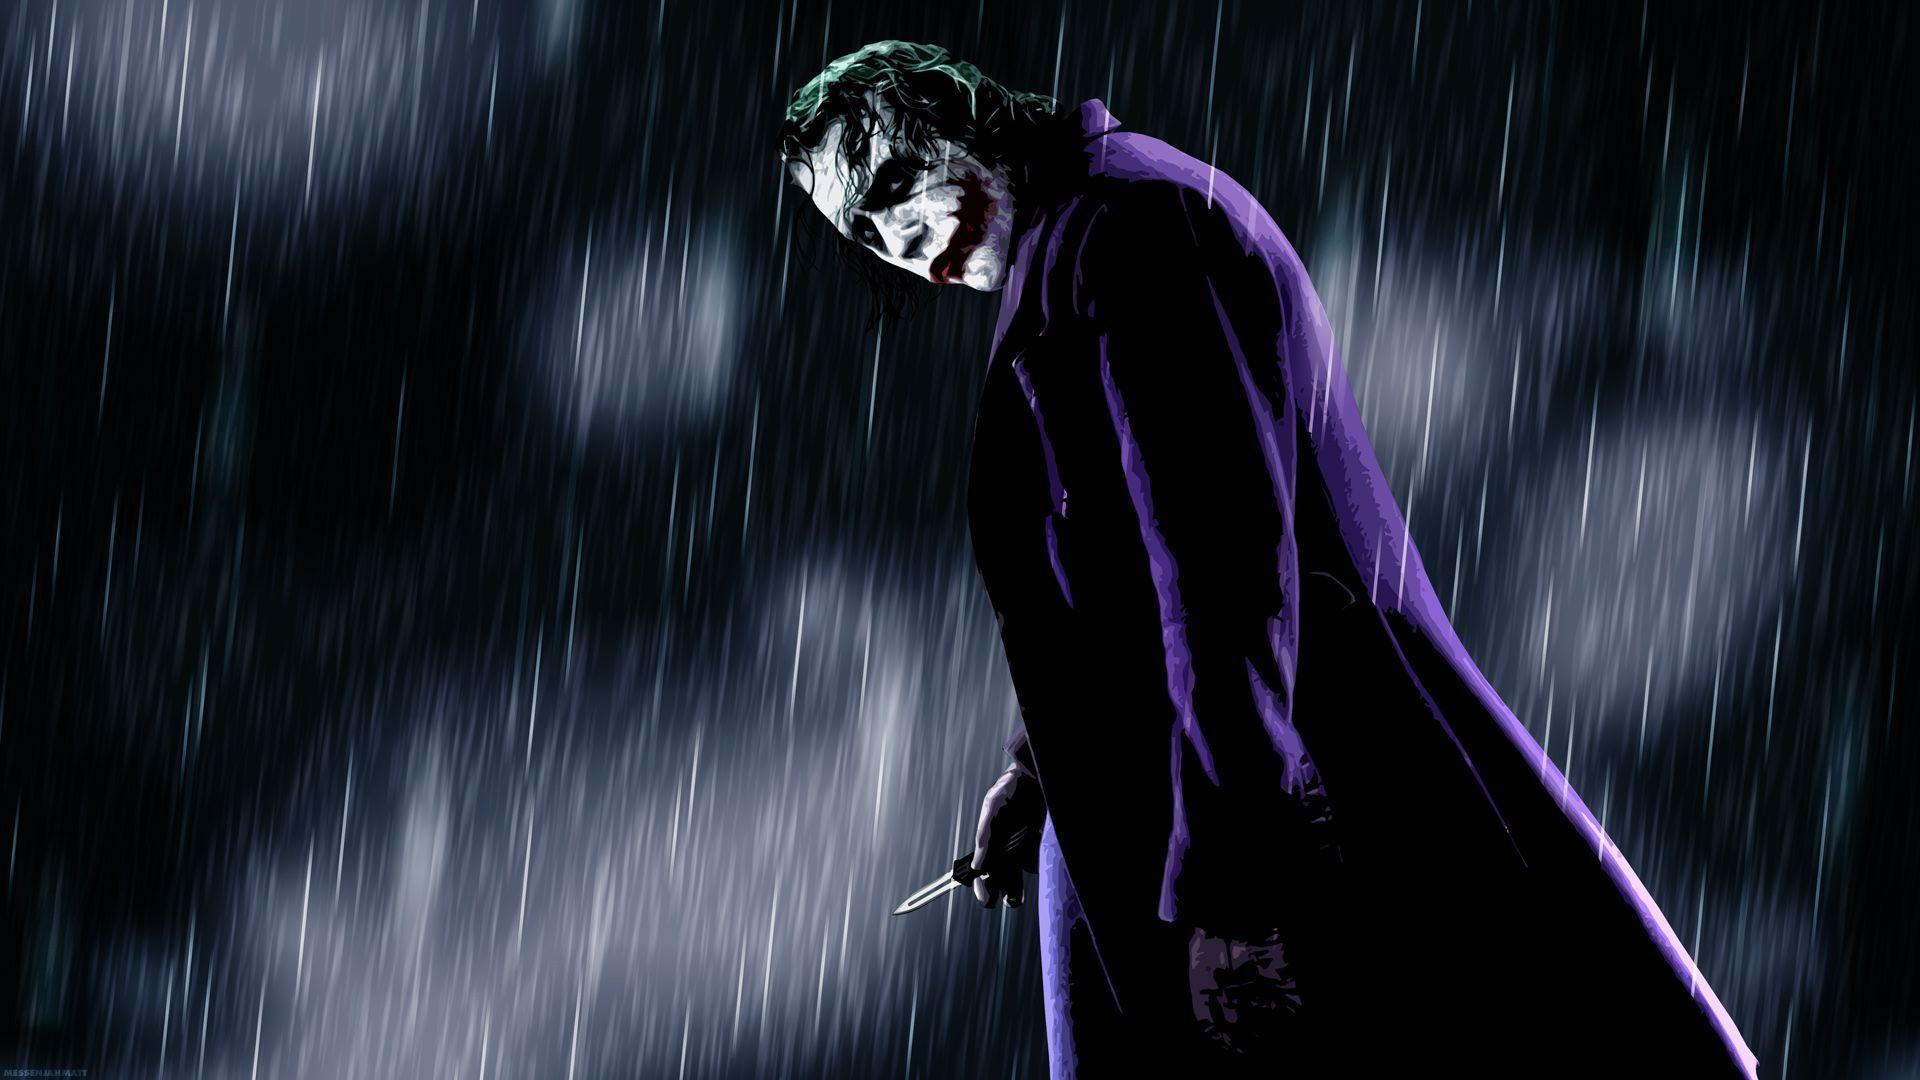 Wallpaper Of Joker In Dark Knight